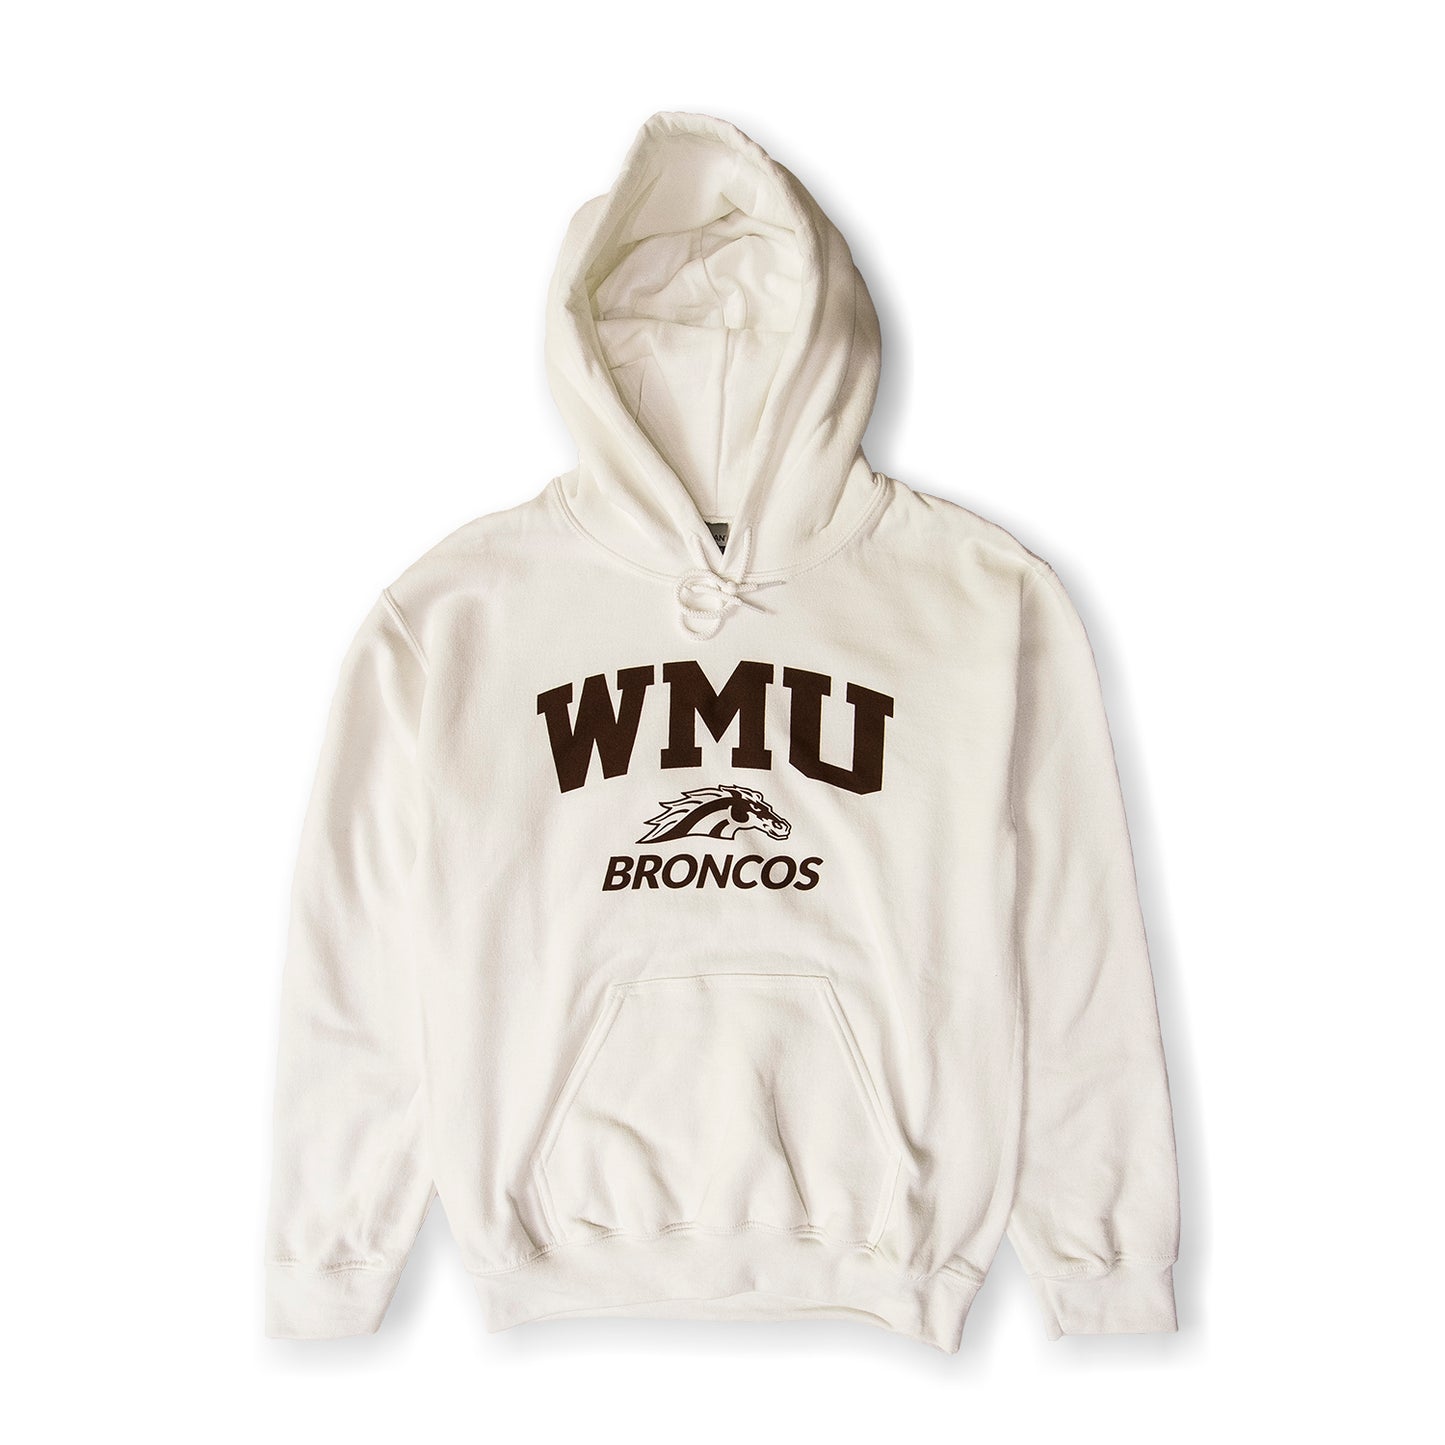 WMU Broncos Hoodie